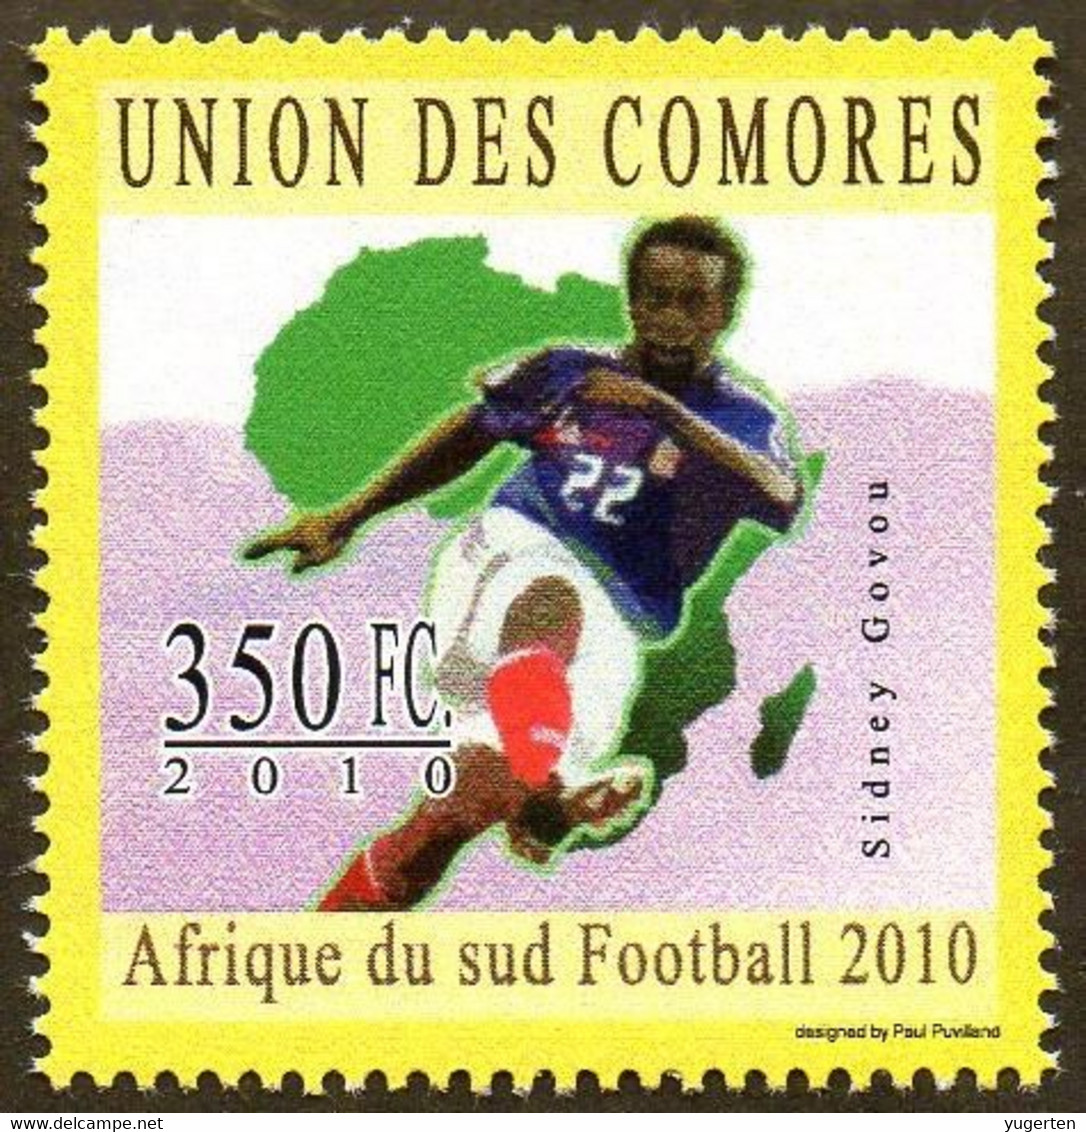 COMORES  - 1v - MNH - Sydney Govou - Football Player France - Sport - Fußball Calcio Futbol Voetbal - Olympique Lyonnais - 2010 – South Africa